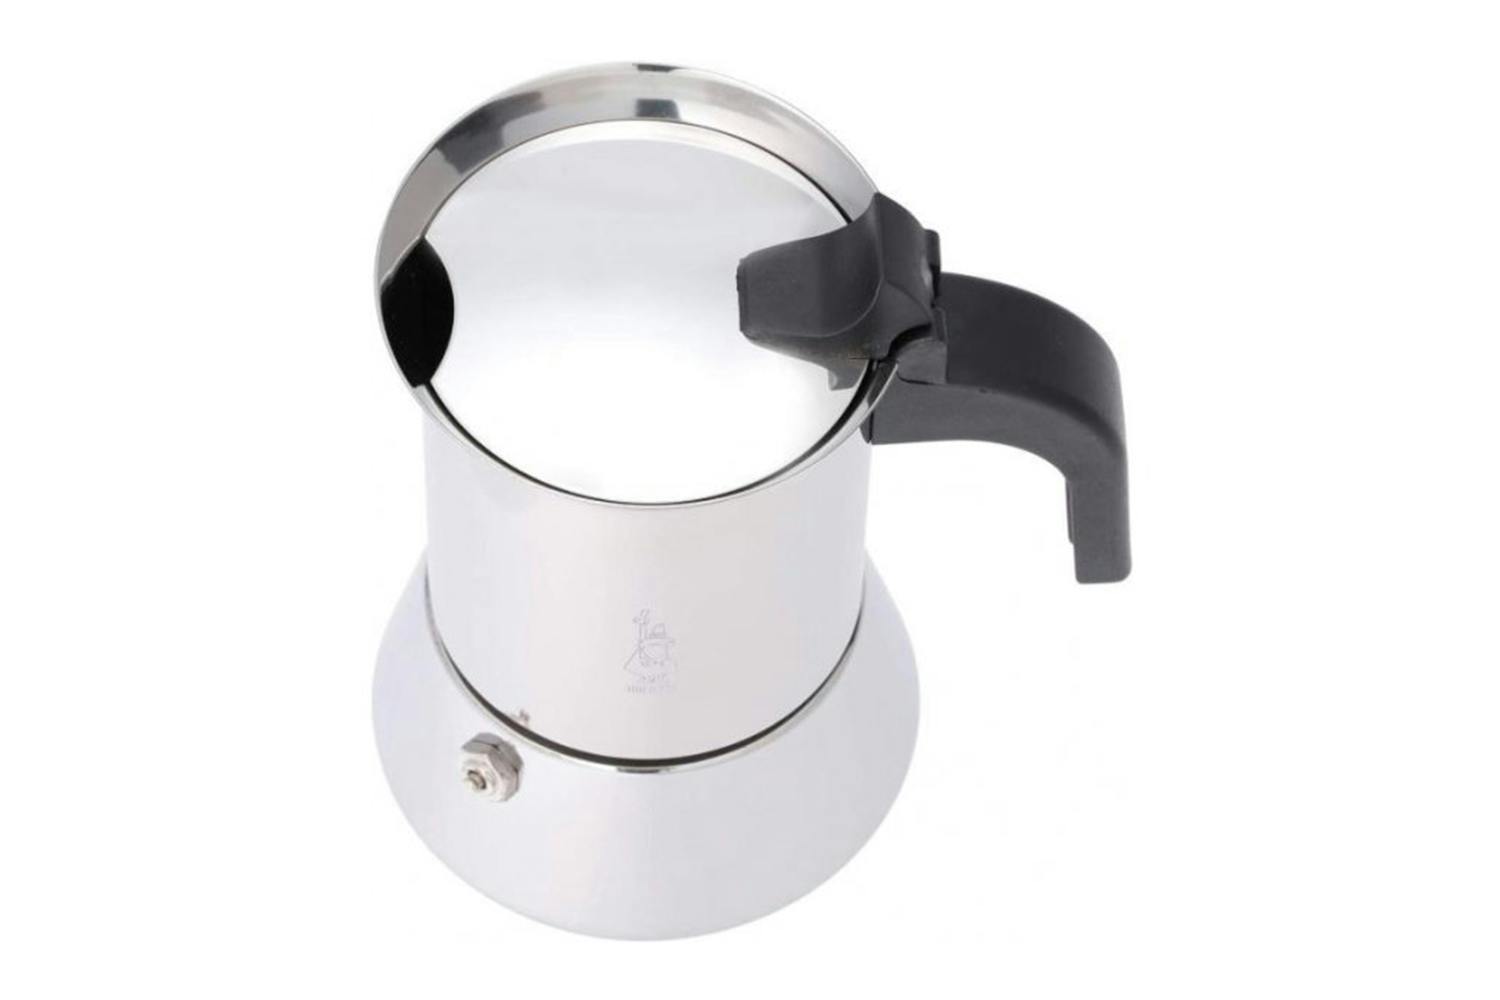 Bialetti Venus Box 4 Cup Espresso Maker, Silver